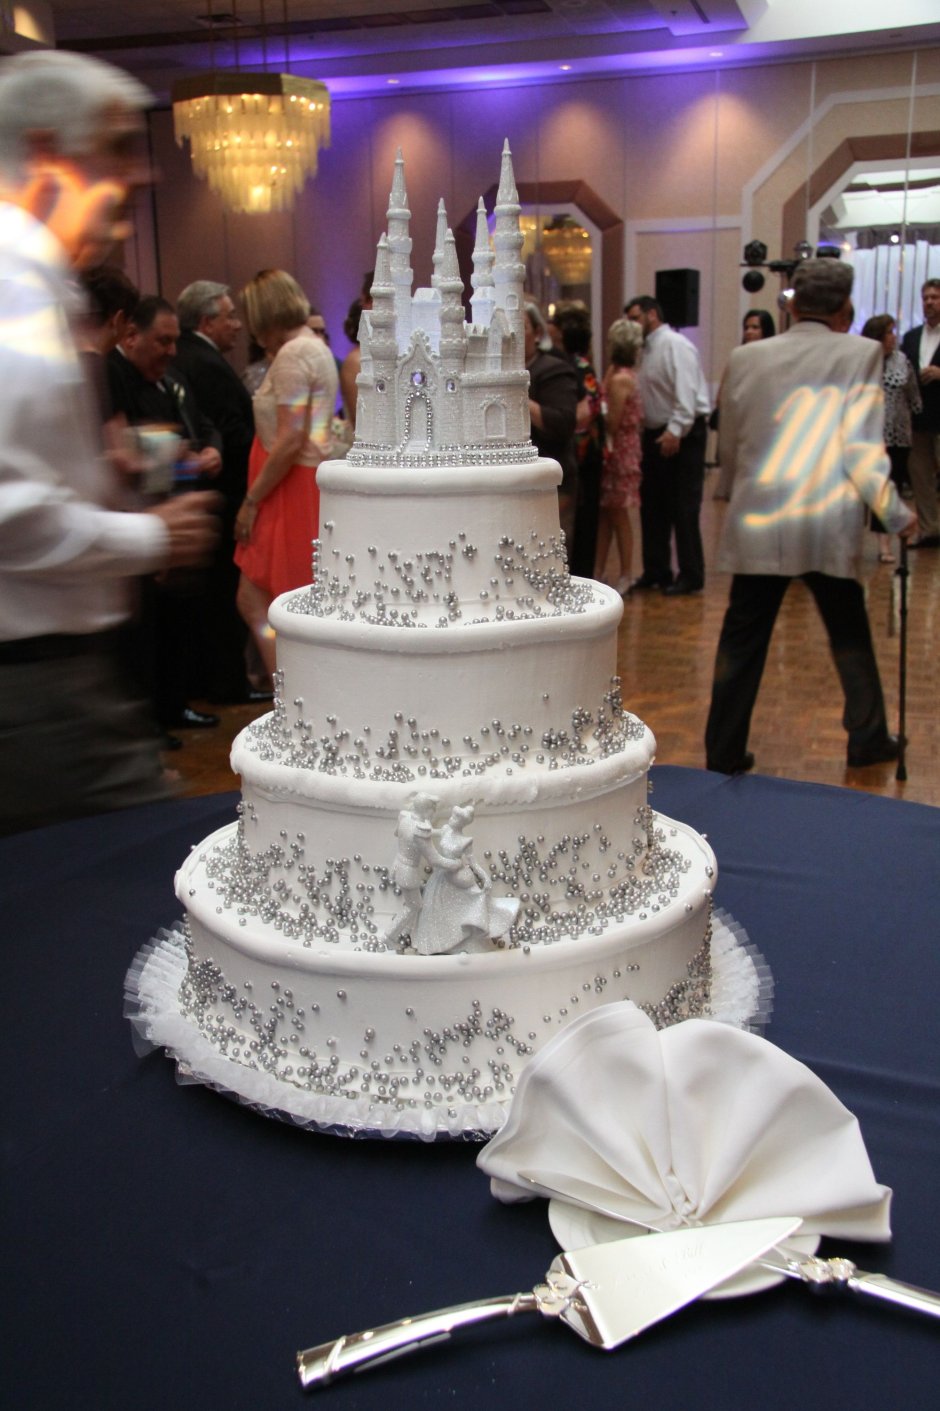 Бутафорский торт на свадьбу